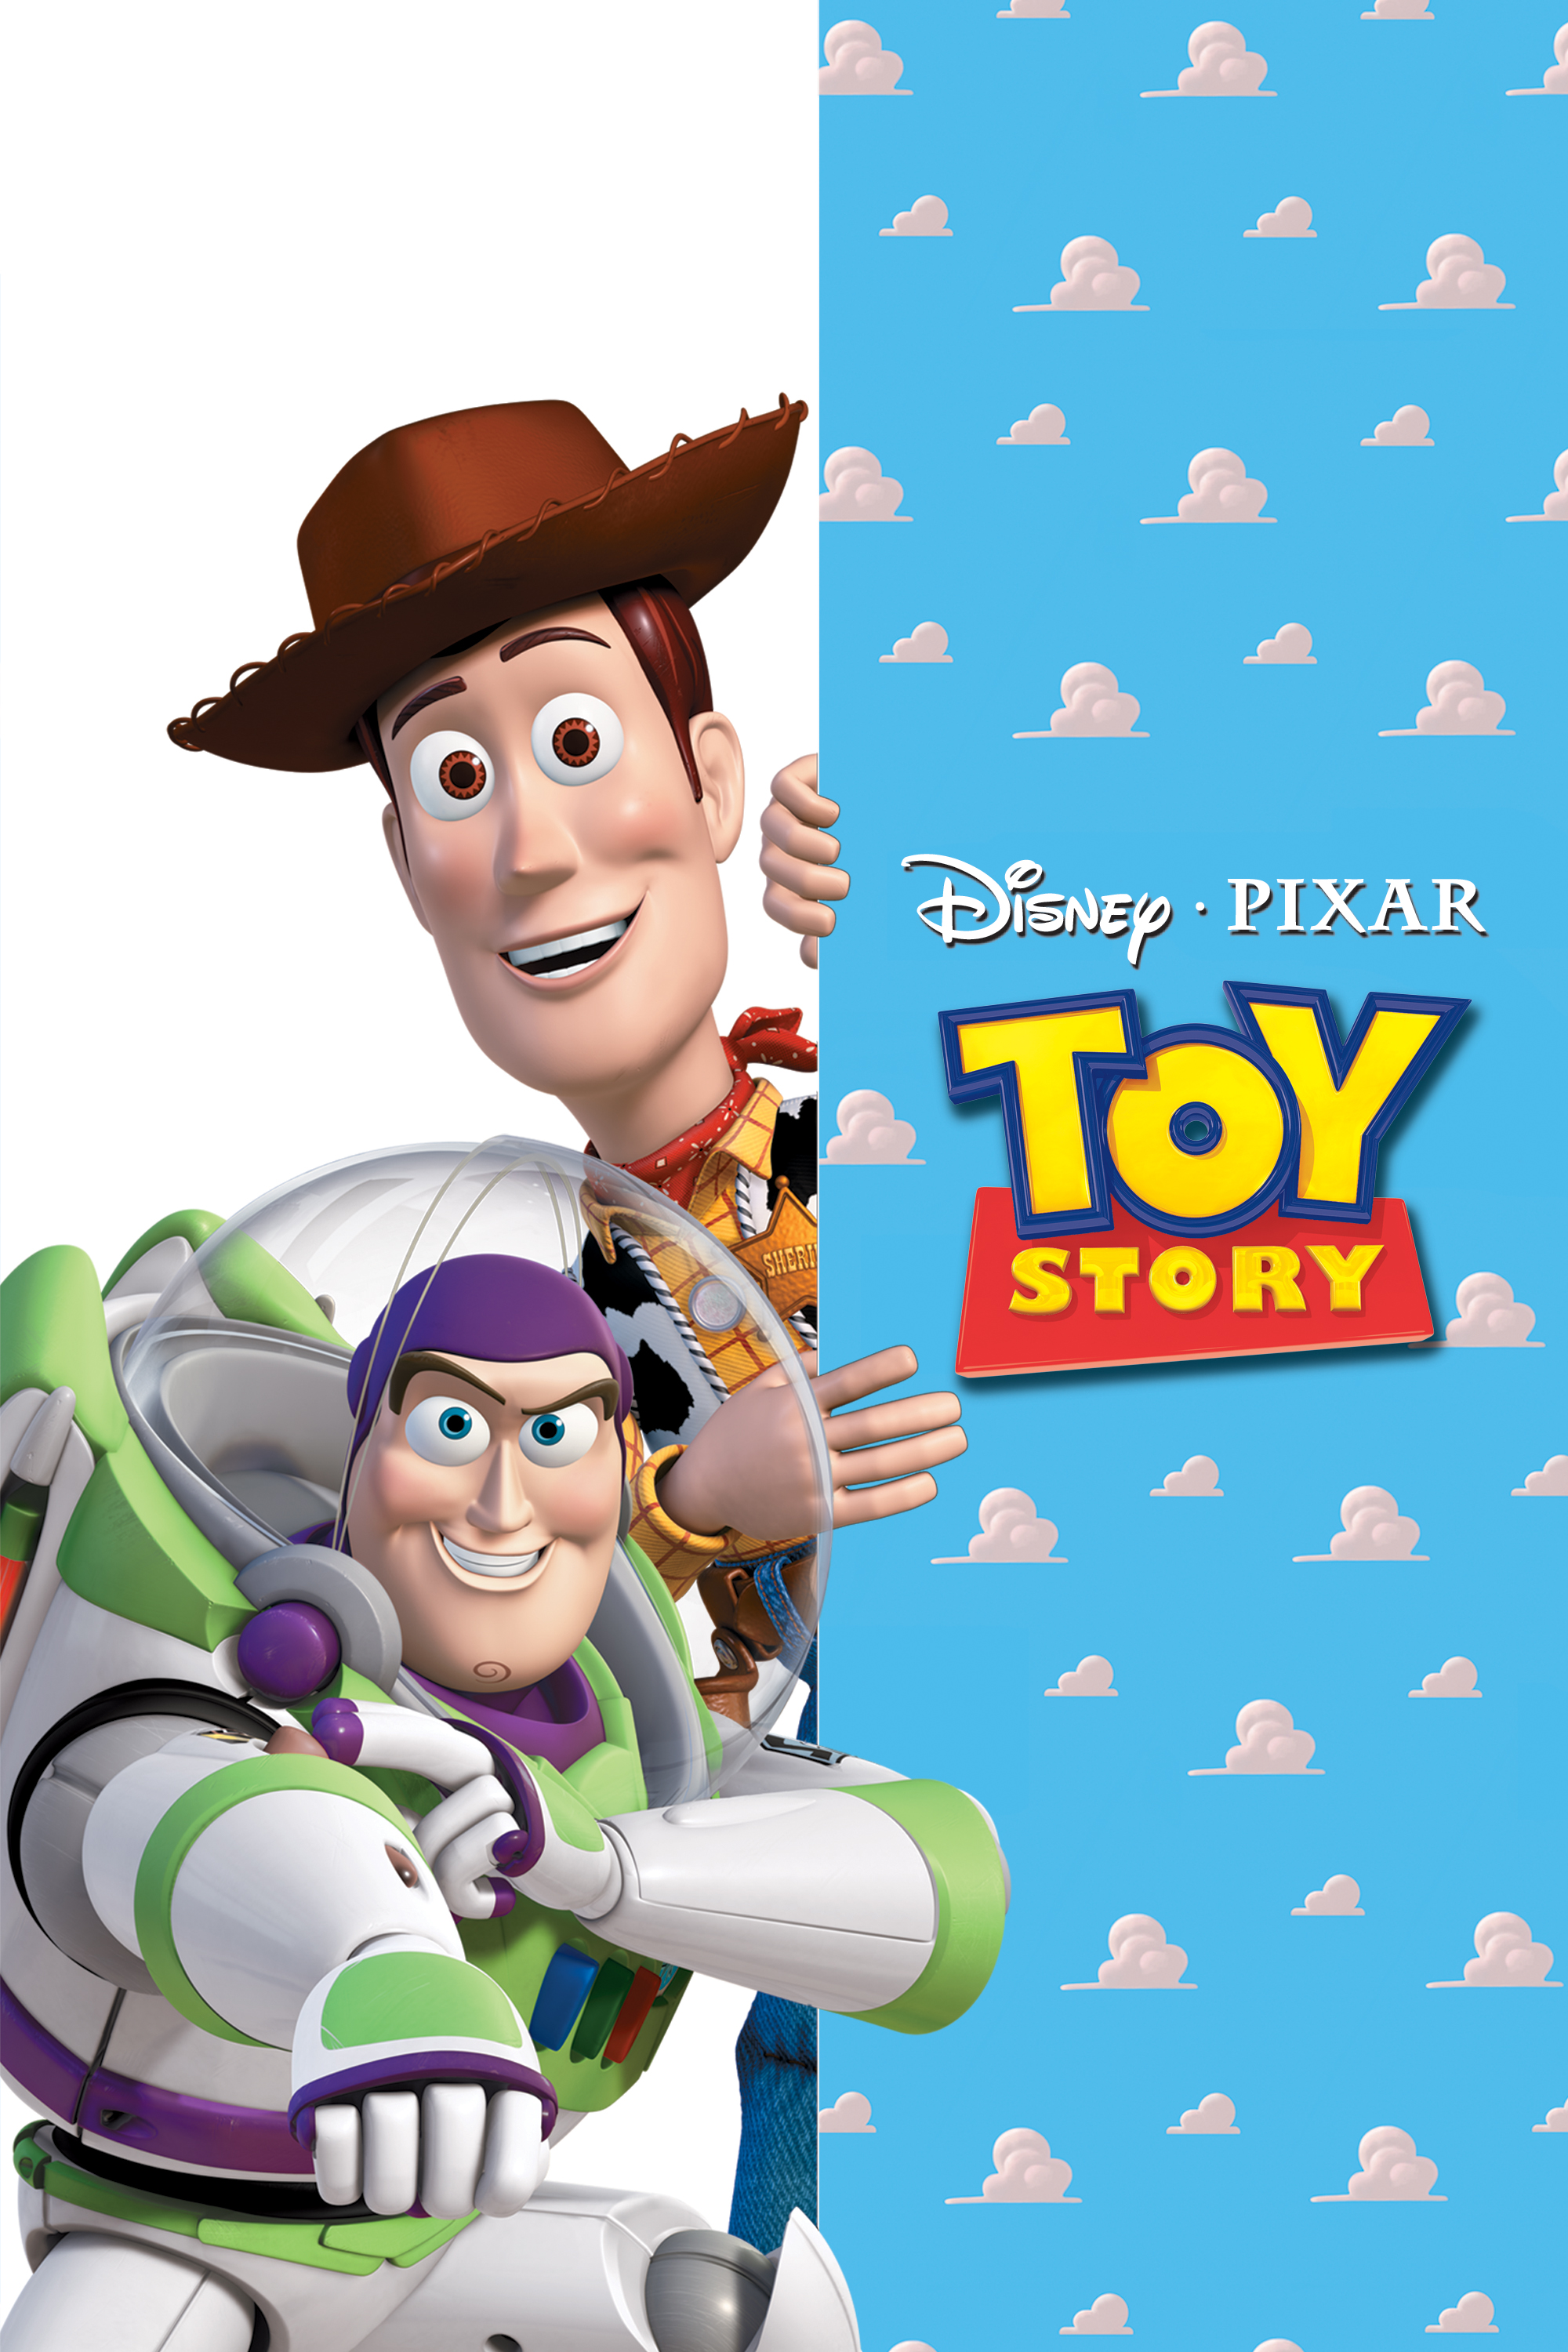 Os conjuntos Toy Story da Disney Pixar estão correndo para a cidade.. Os  meninos poderão colecionar todos os personagens principais da filme Toy  Stor - Carrefour